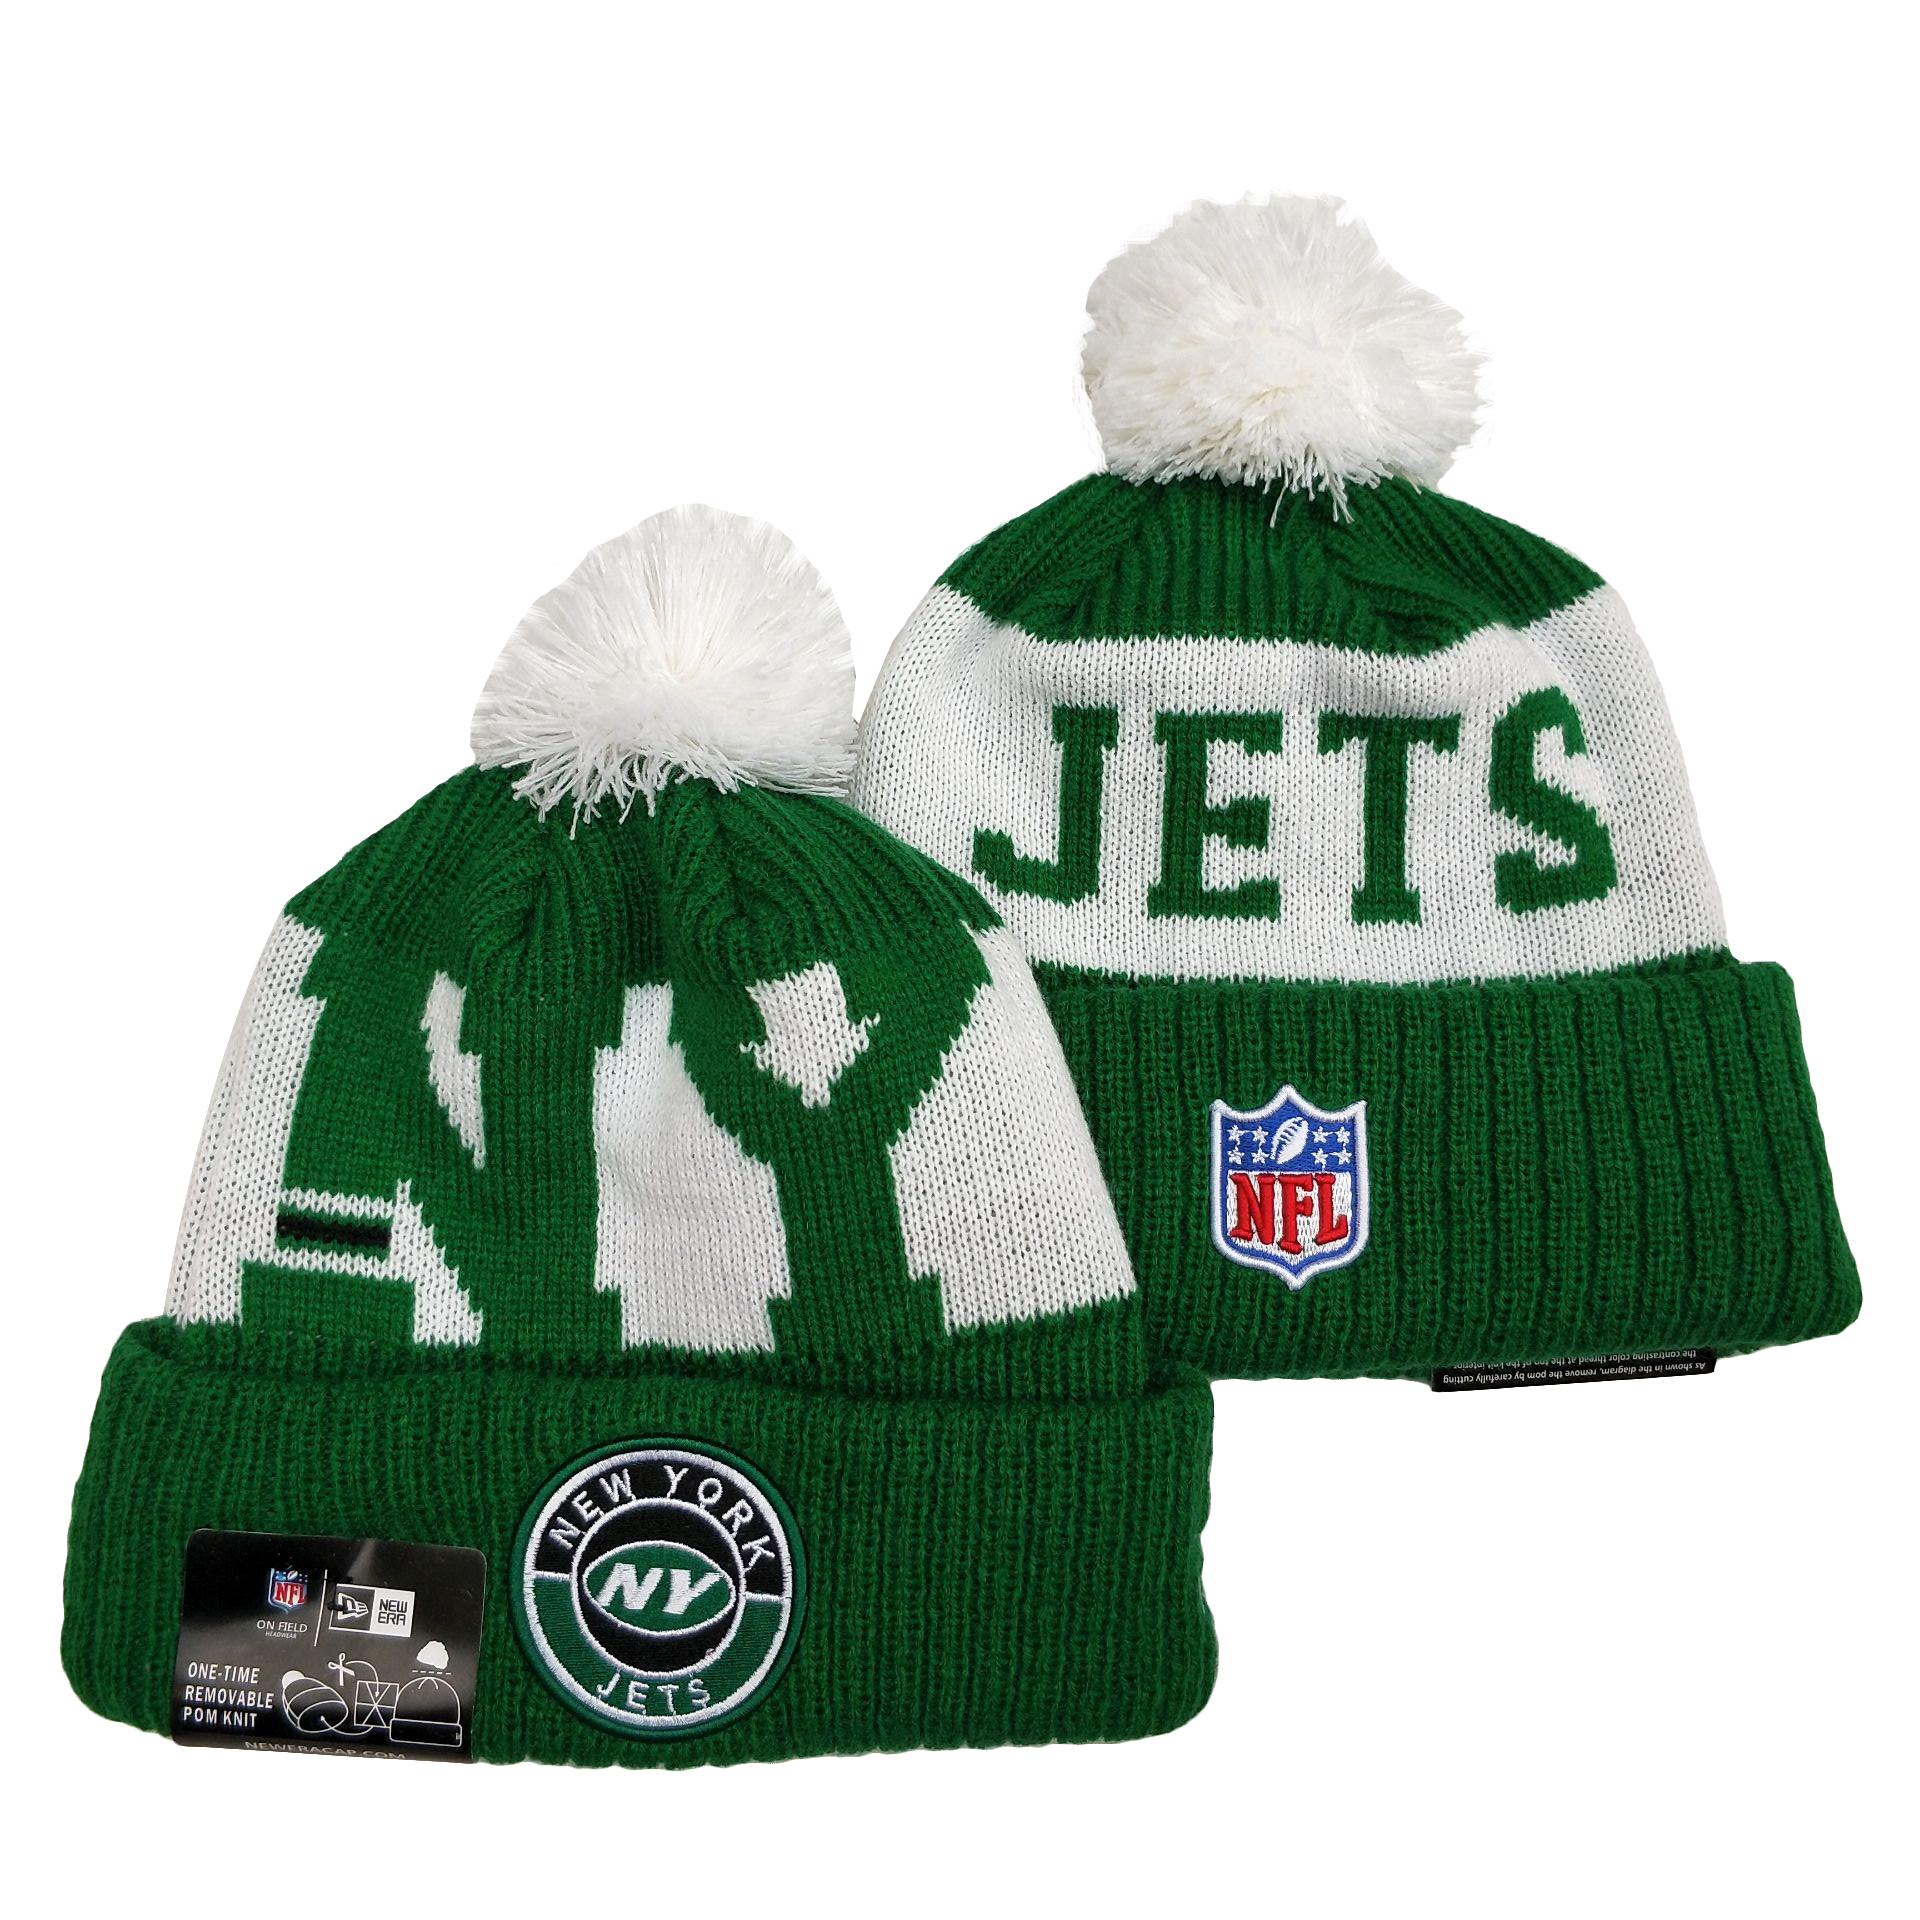 New York Jets Knit Hats 026